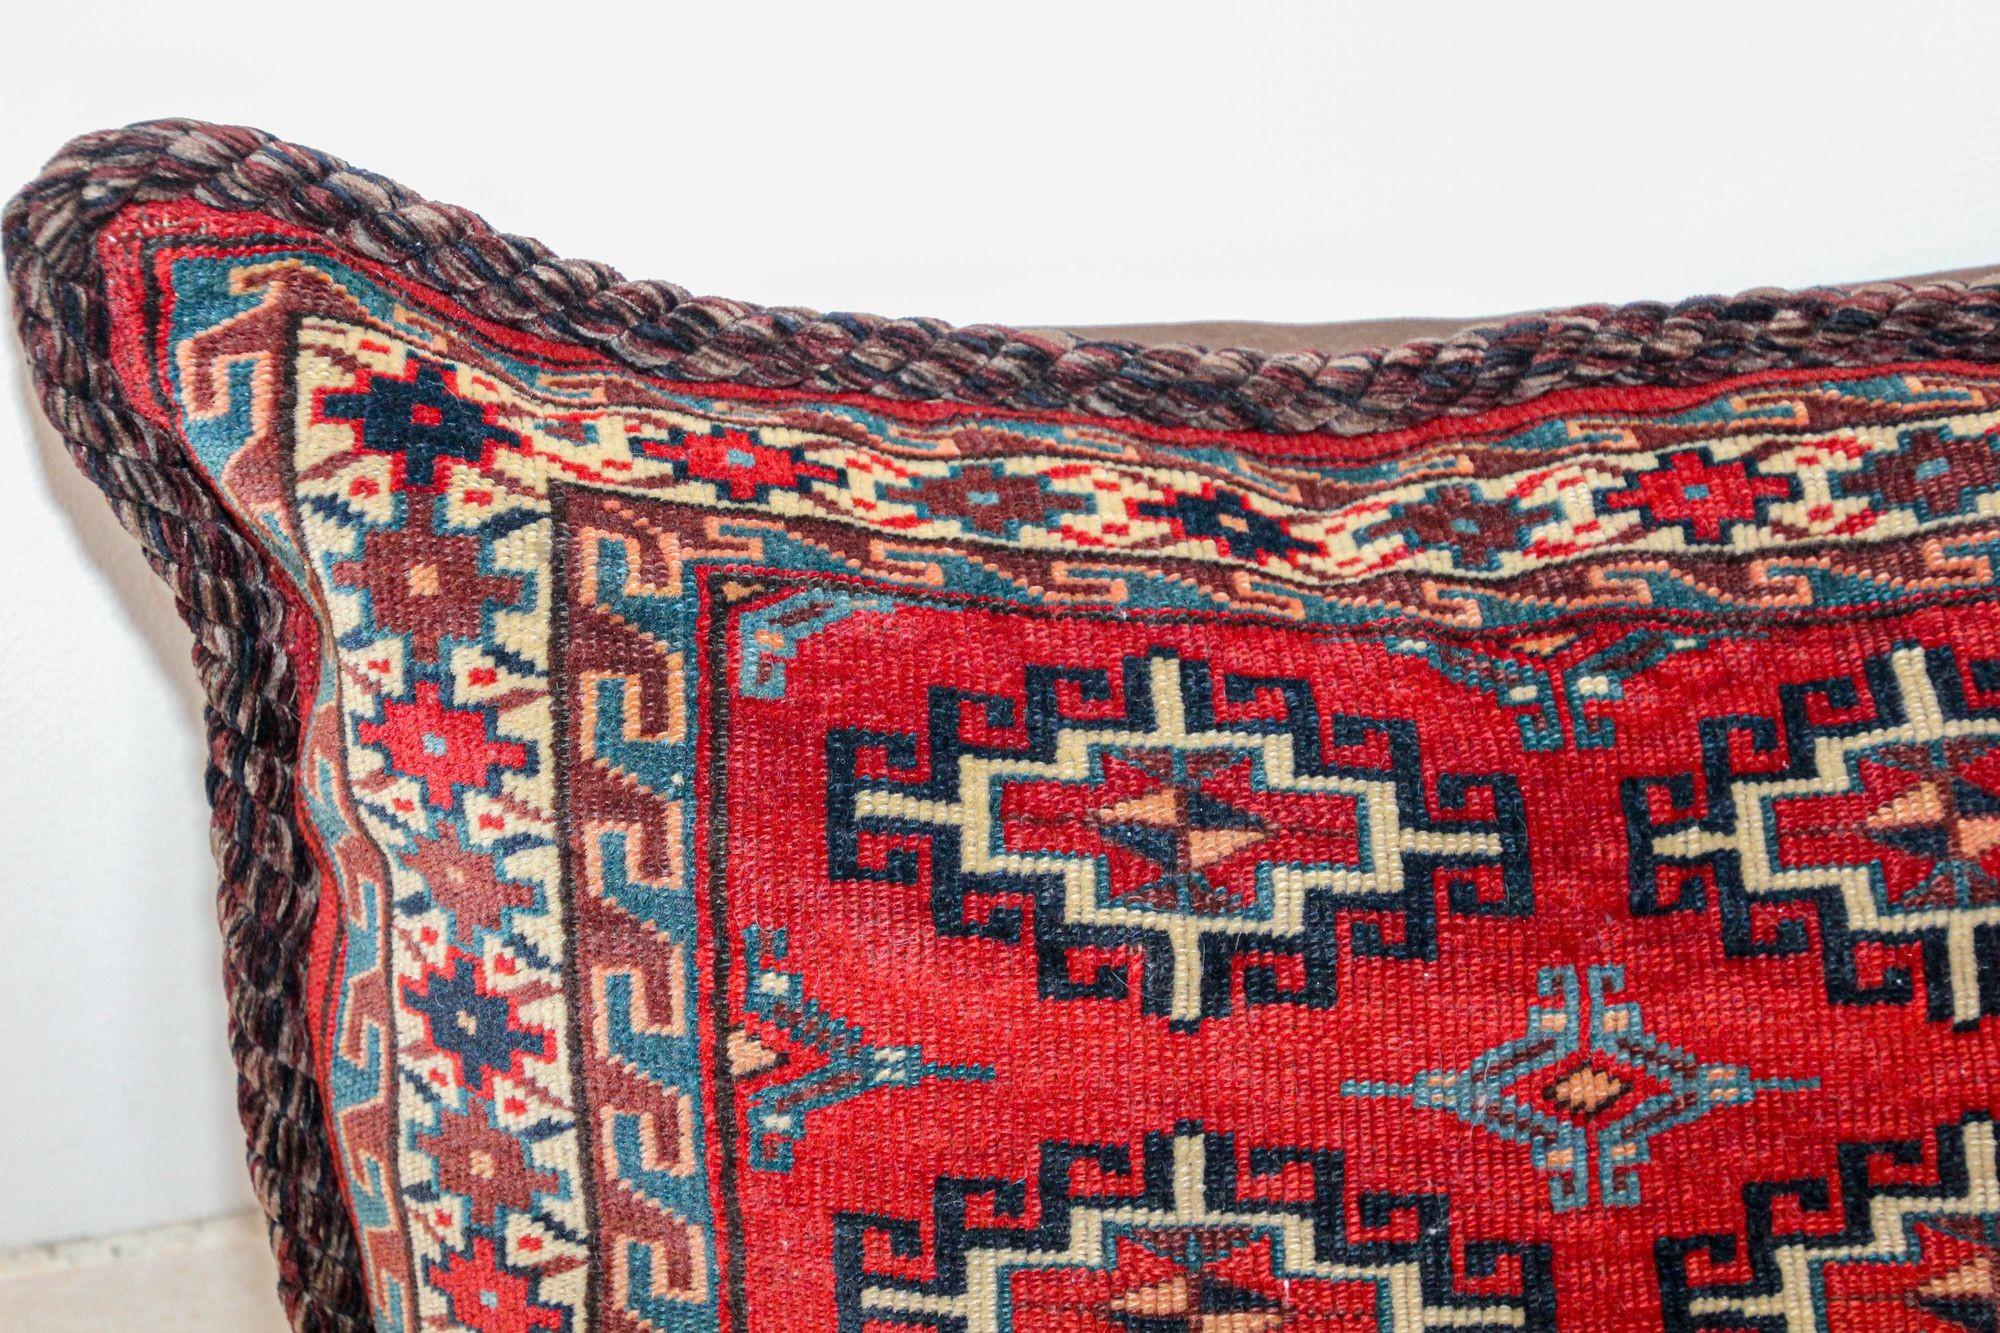 Large Vintage Floor Pillow Handwoven Rug Lumbar Pillow, Turkmen Torba.
Handgefertigte Stammestasche aus Sattelkorn, diese große ethnische Kamelkorntasche wurde in ein großes Boden- oder Lendenkissen umgewandelt.
Dieser Stammes-Textilteppich hat ein